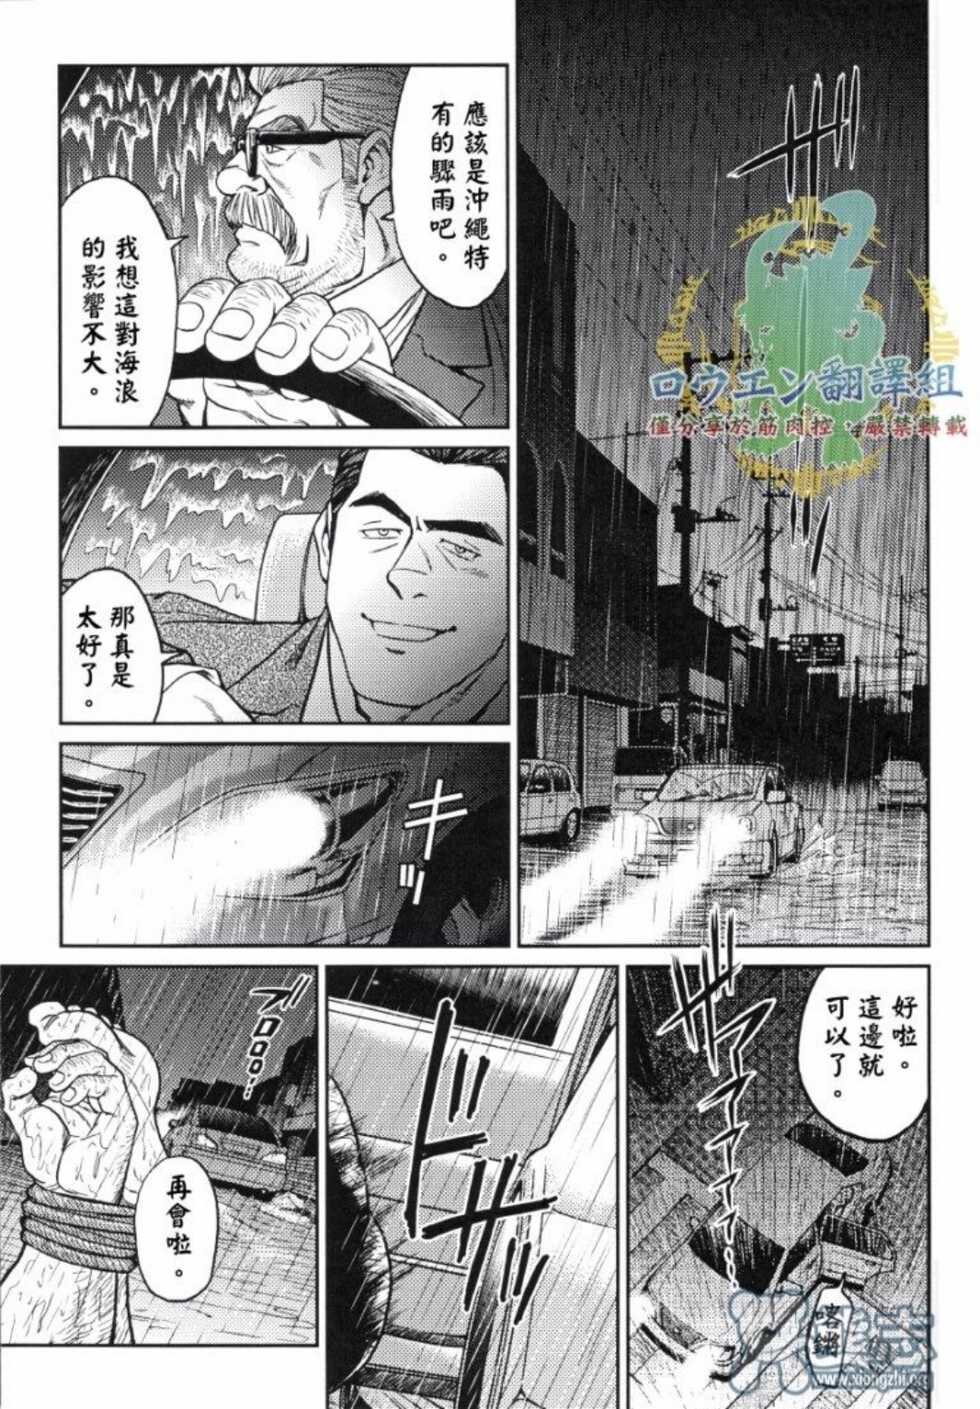 冲绳奴隶岛 02 - Page 26